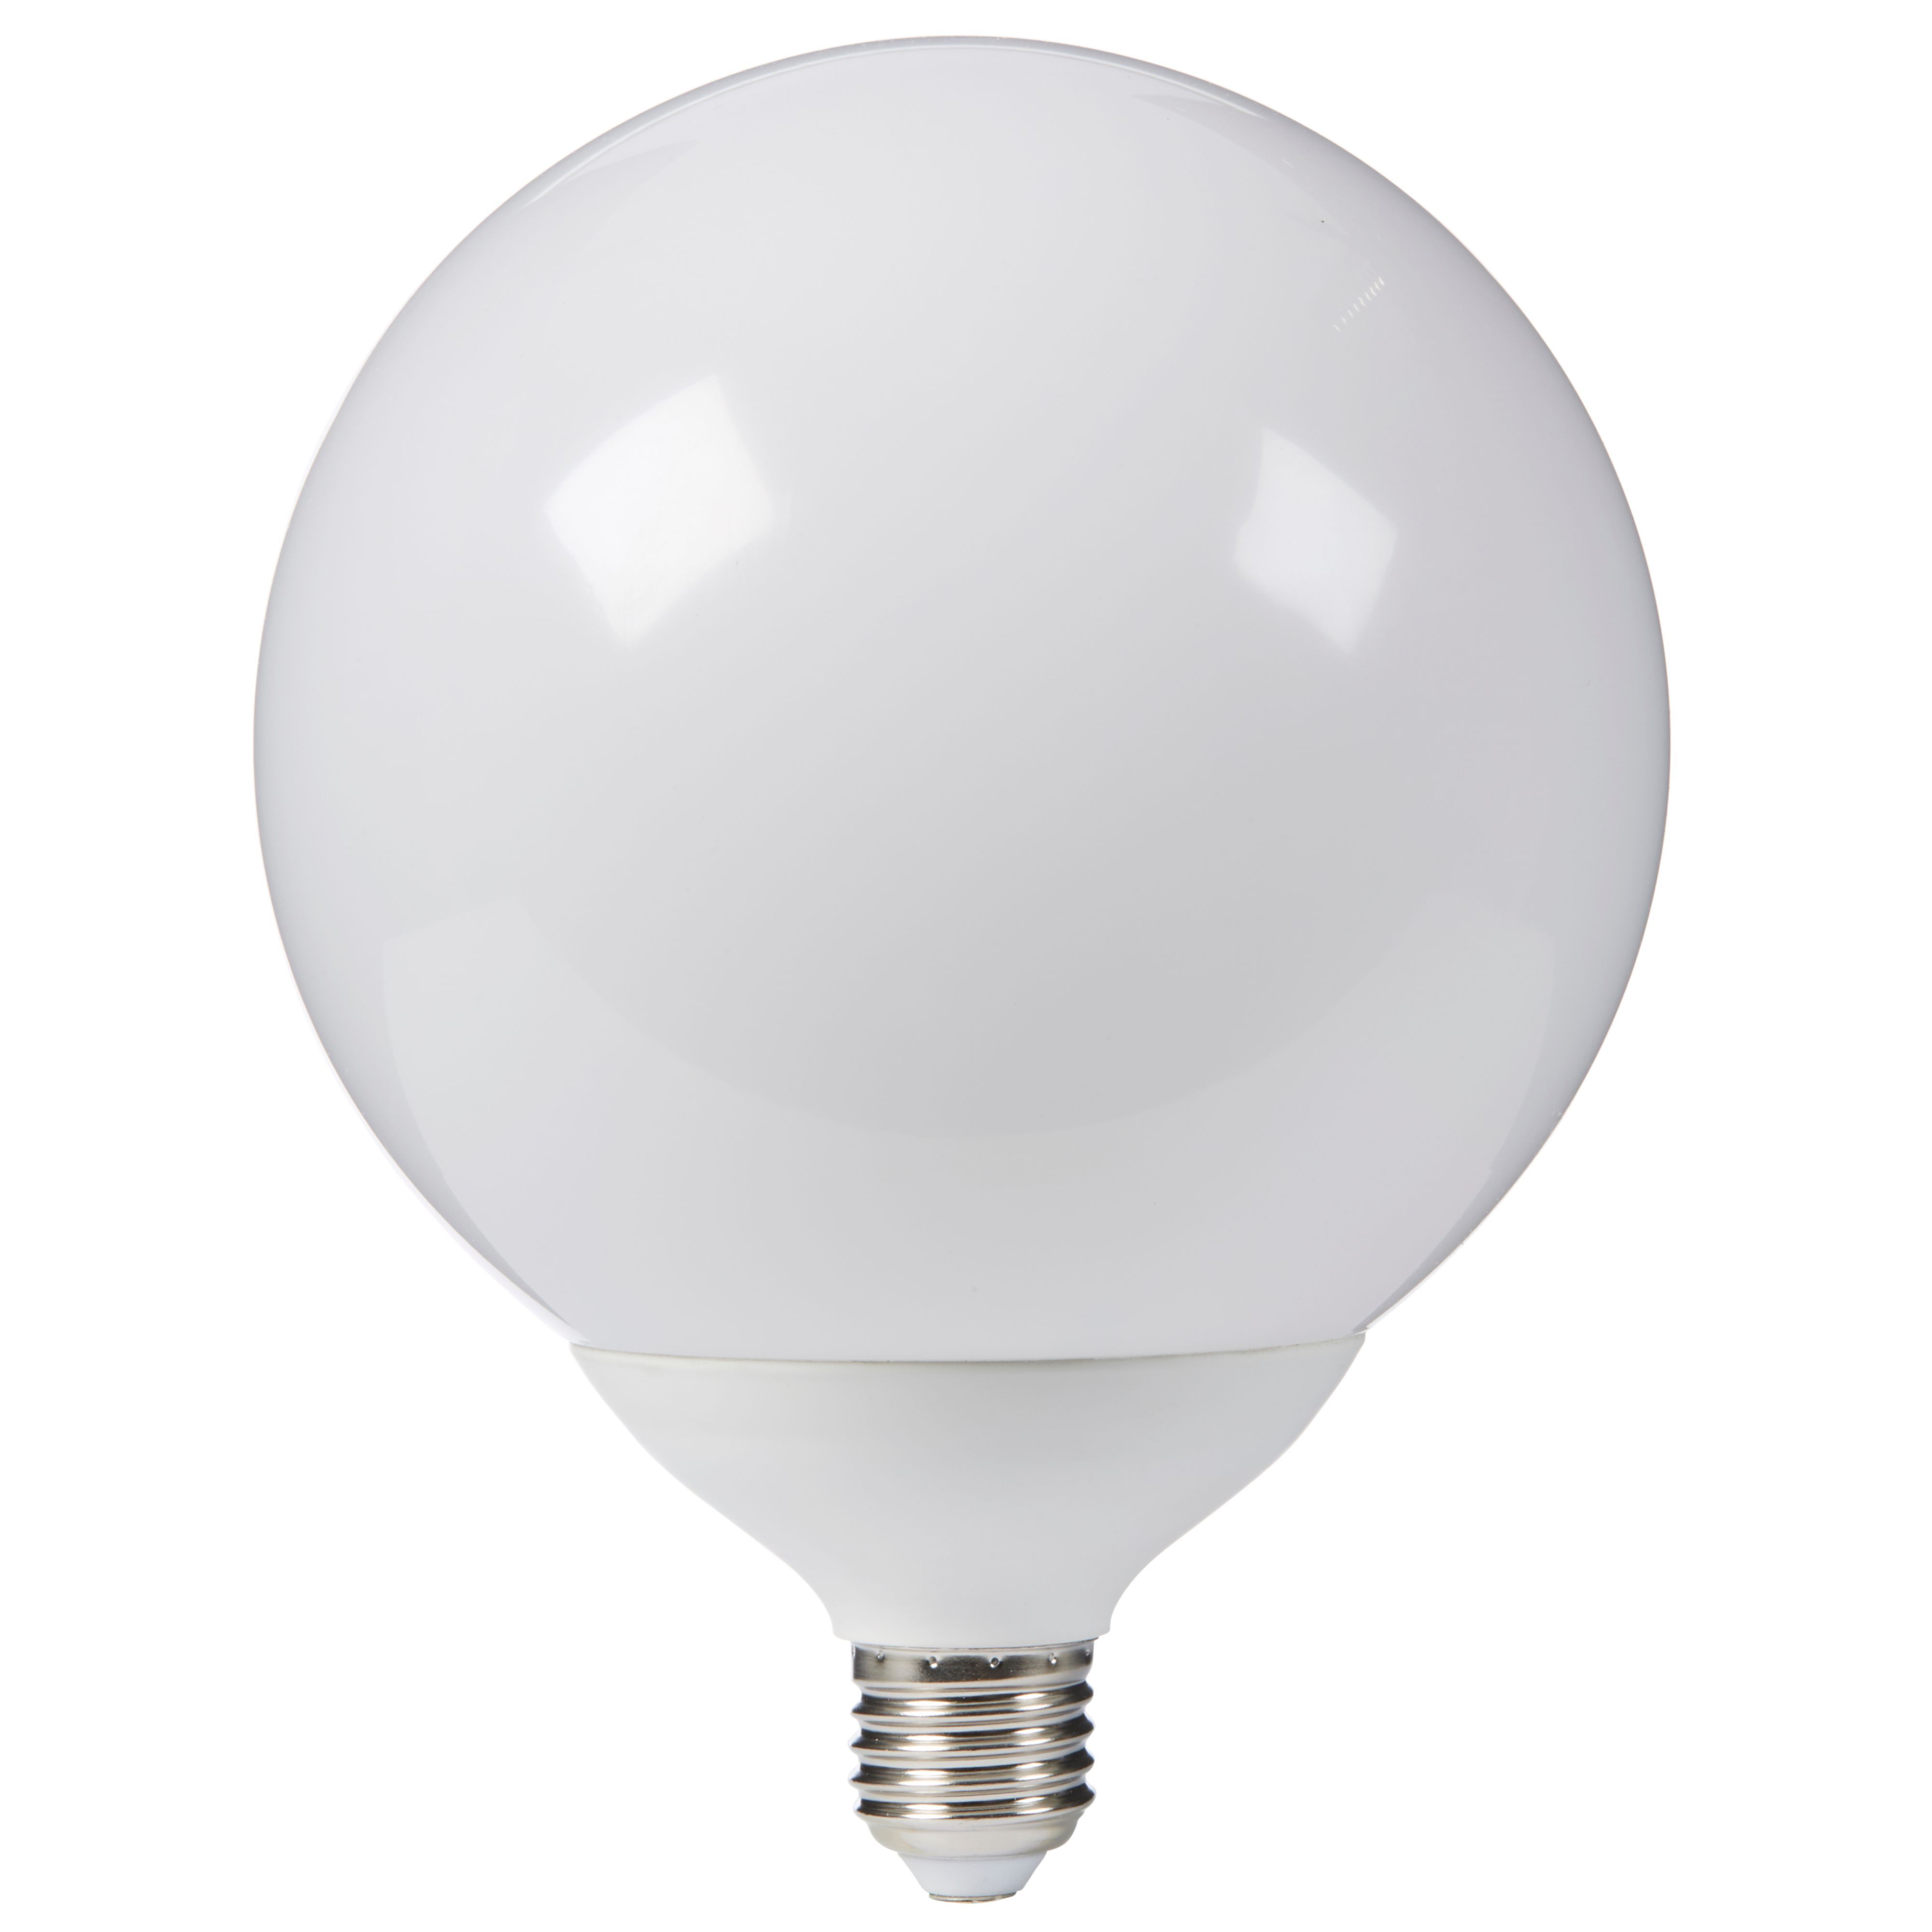 Diall 1521lm GLS Warm white LED Light bulb